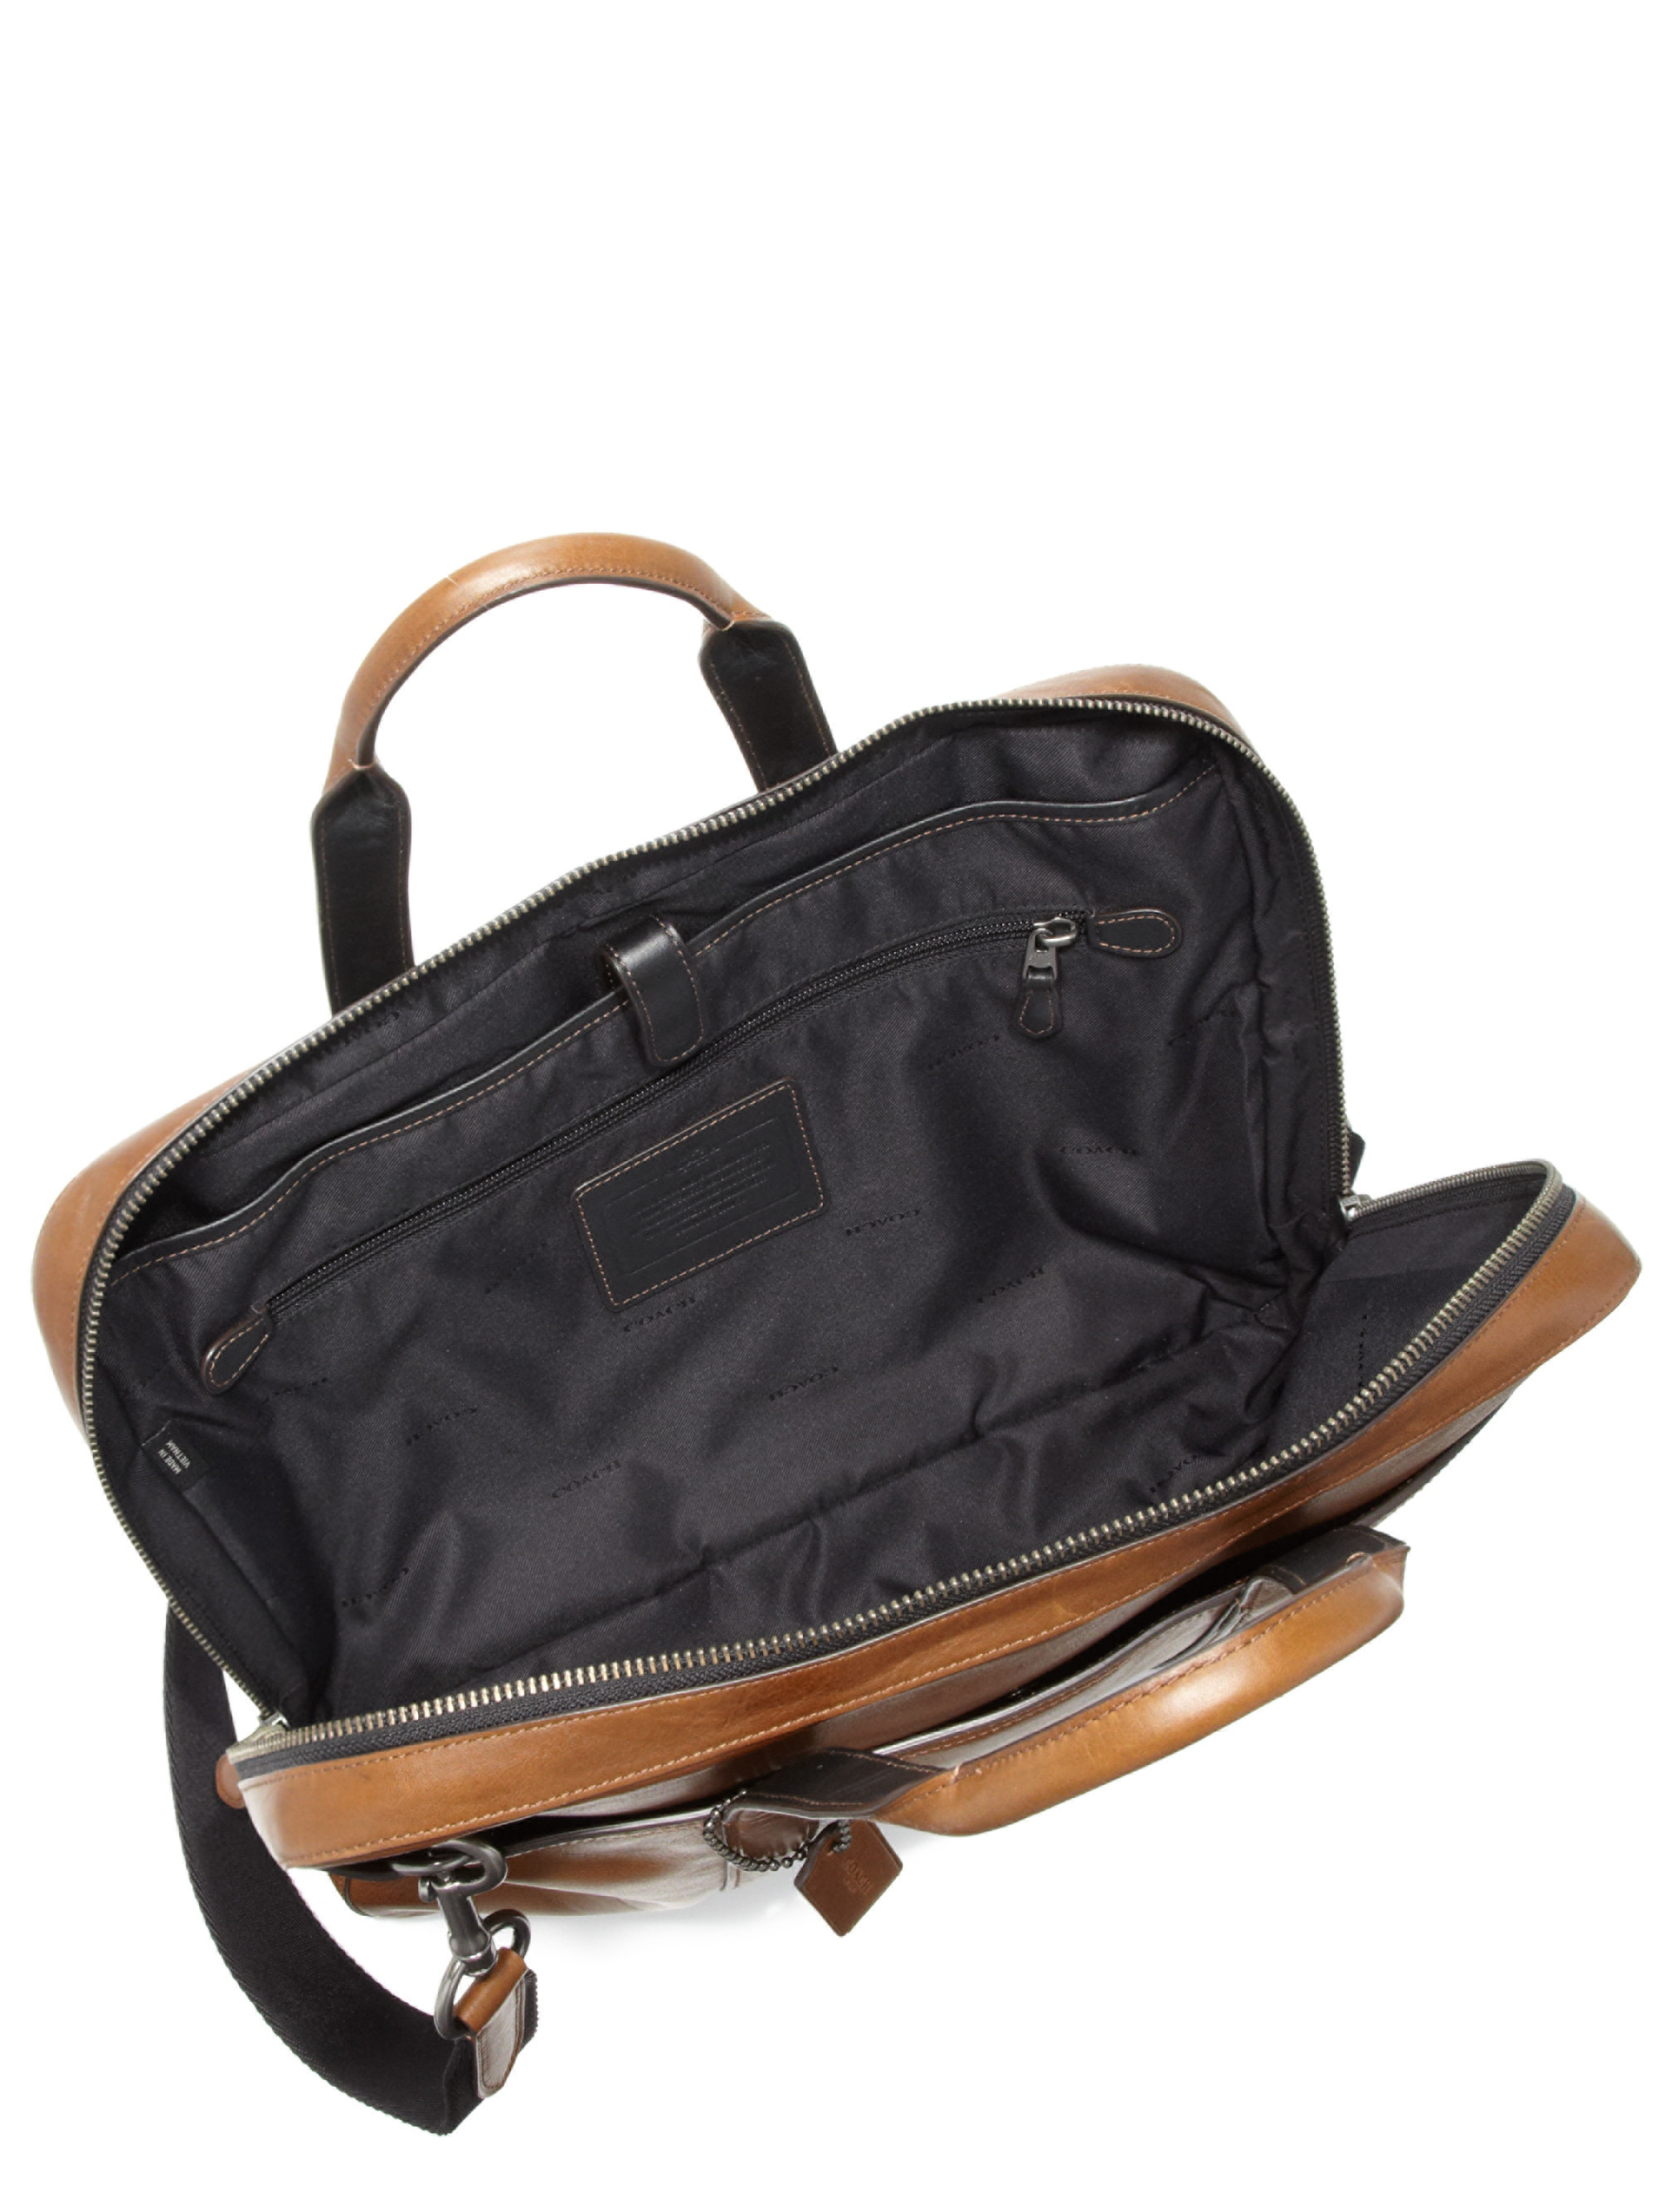 Lyst - Coach Leather Shoulder Bag in Brown for Men